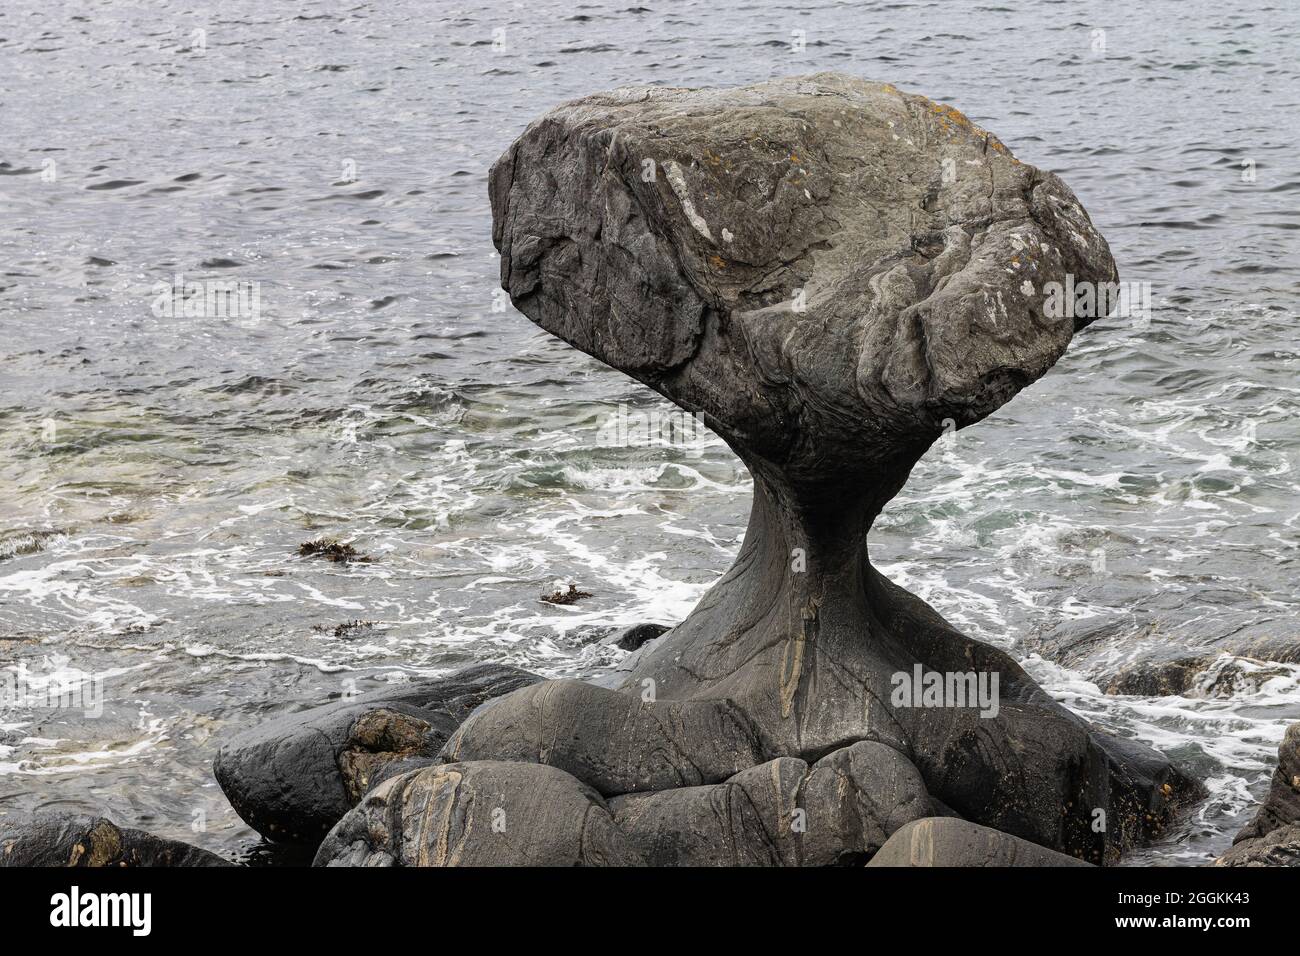 La roccia di Kannesteinen, a forma di fungo, sulla costa di Oppedal, Vågsøy non lontano da Måløy, è un fenomeno geologico e un monumento naturale realizzato dal mare Foto Stock